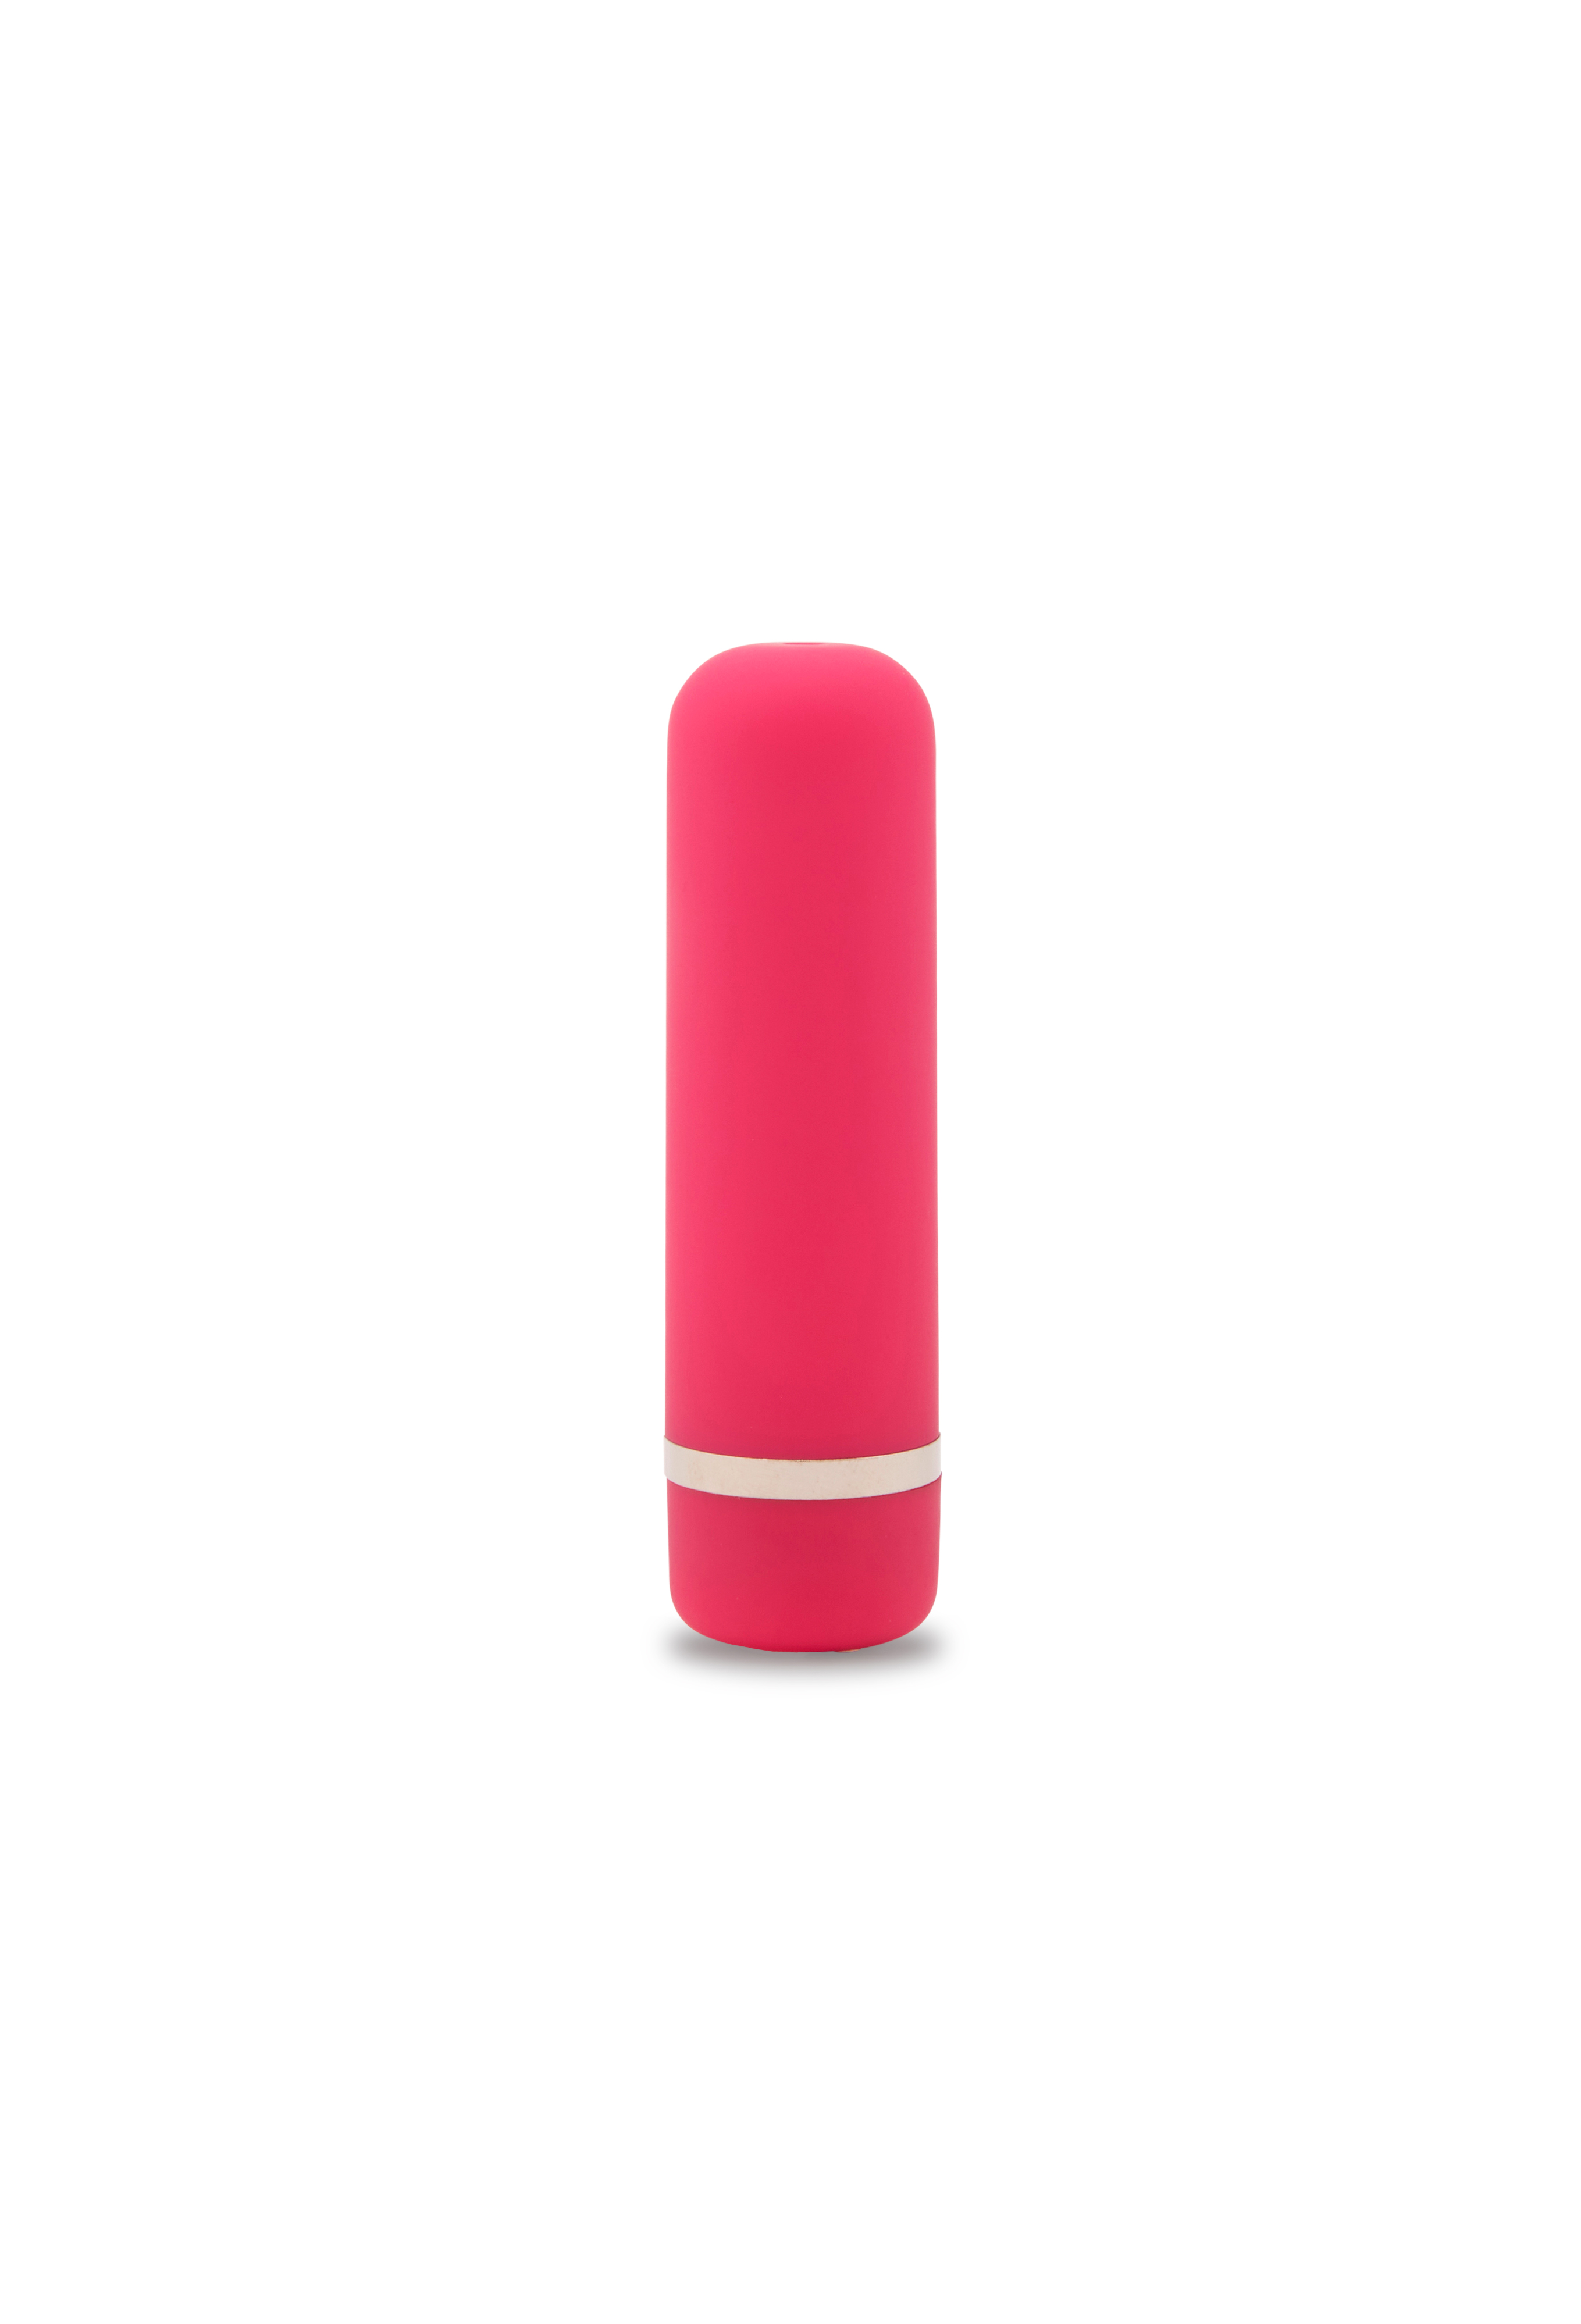 Nu Sensuelle Joie Rechargeable Pink Bullet Vibrator